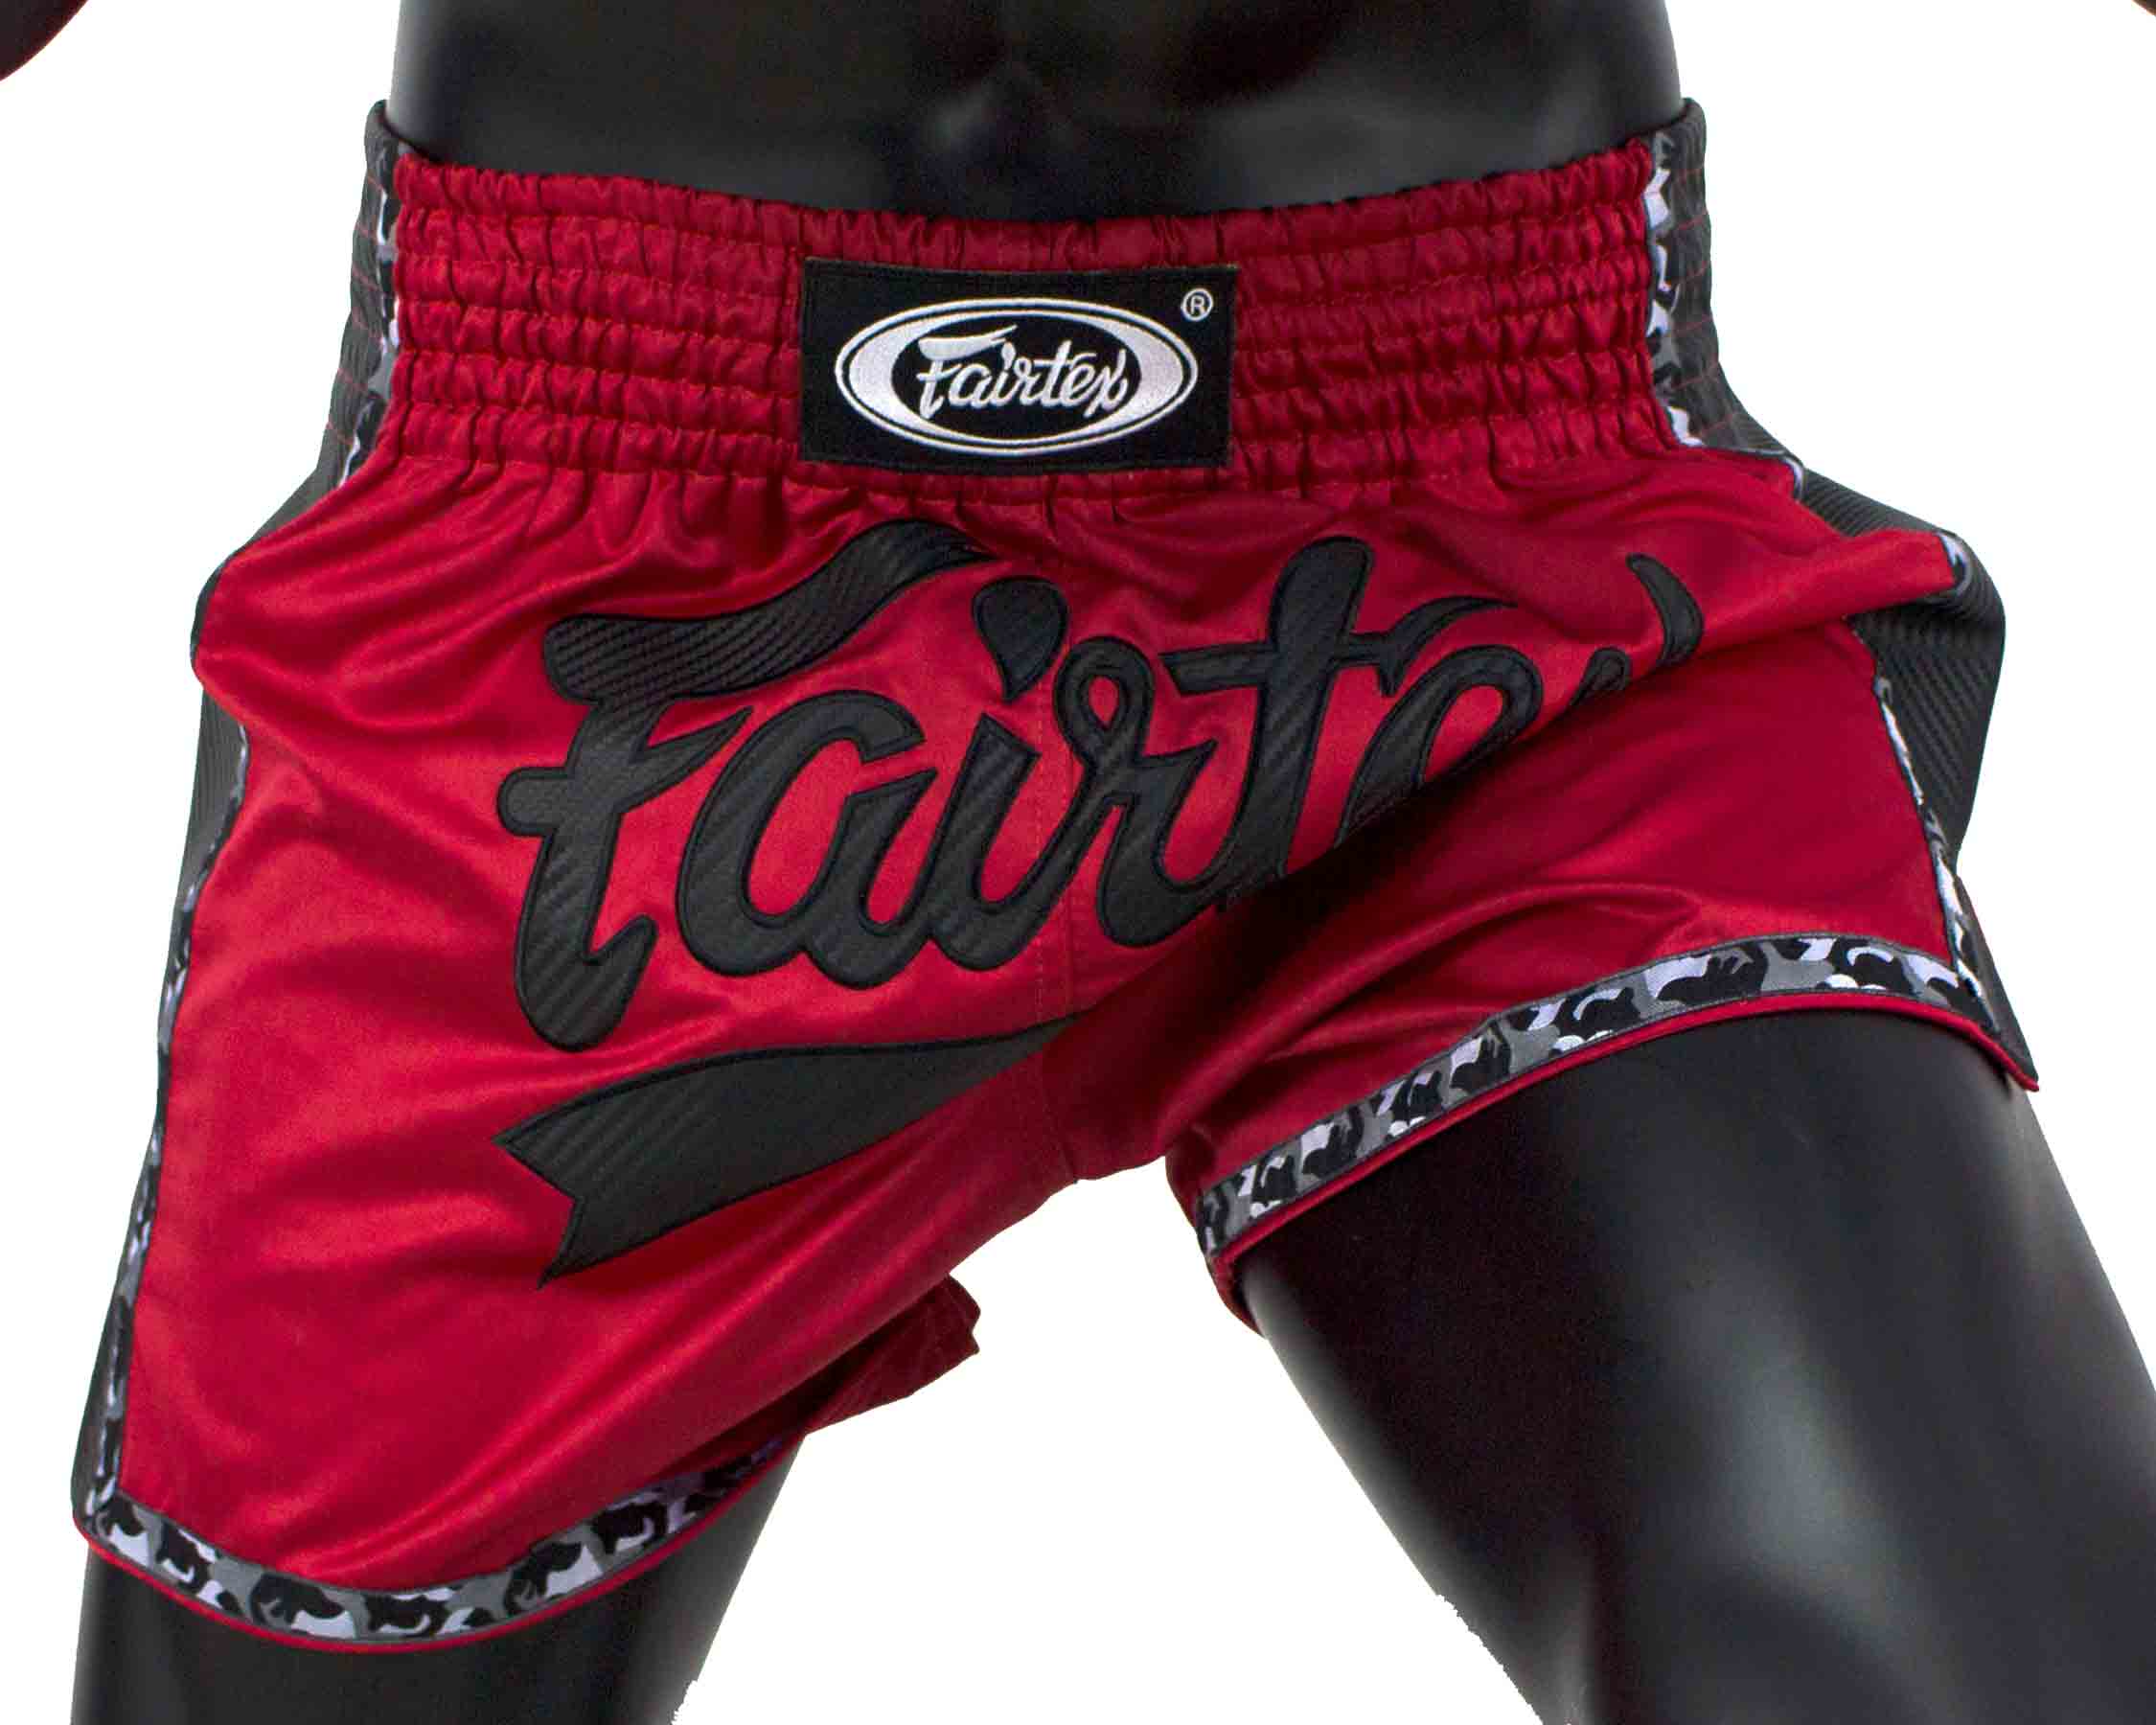 Fairtex BS1703 muay thai shorts Red/Black Satin - Gym- and Ringwear -  Fairtex, Muay Thai and MMA Shop